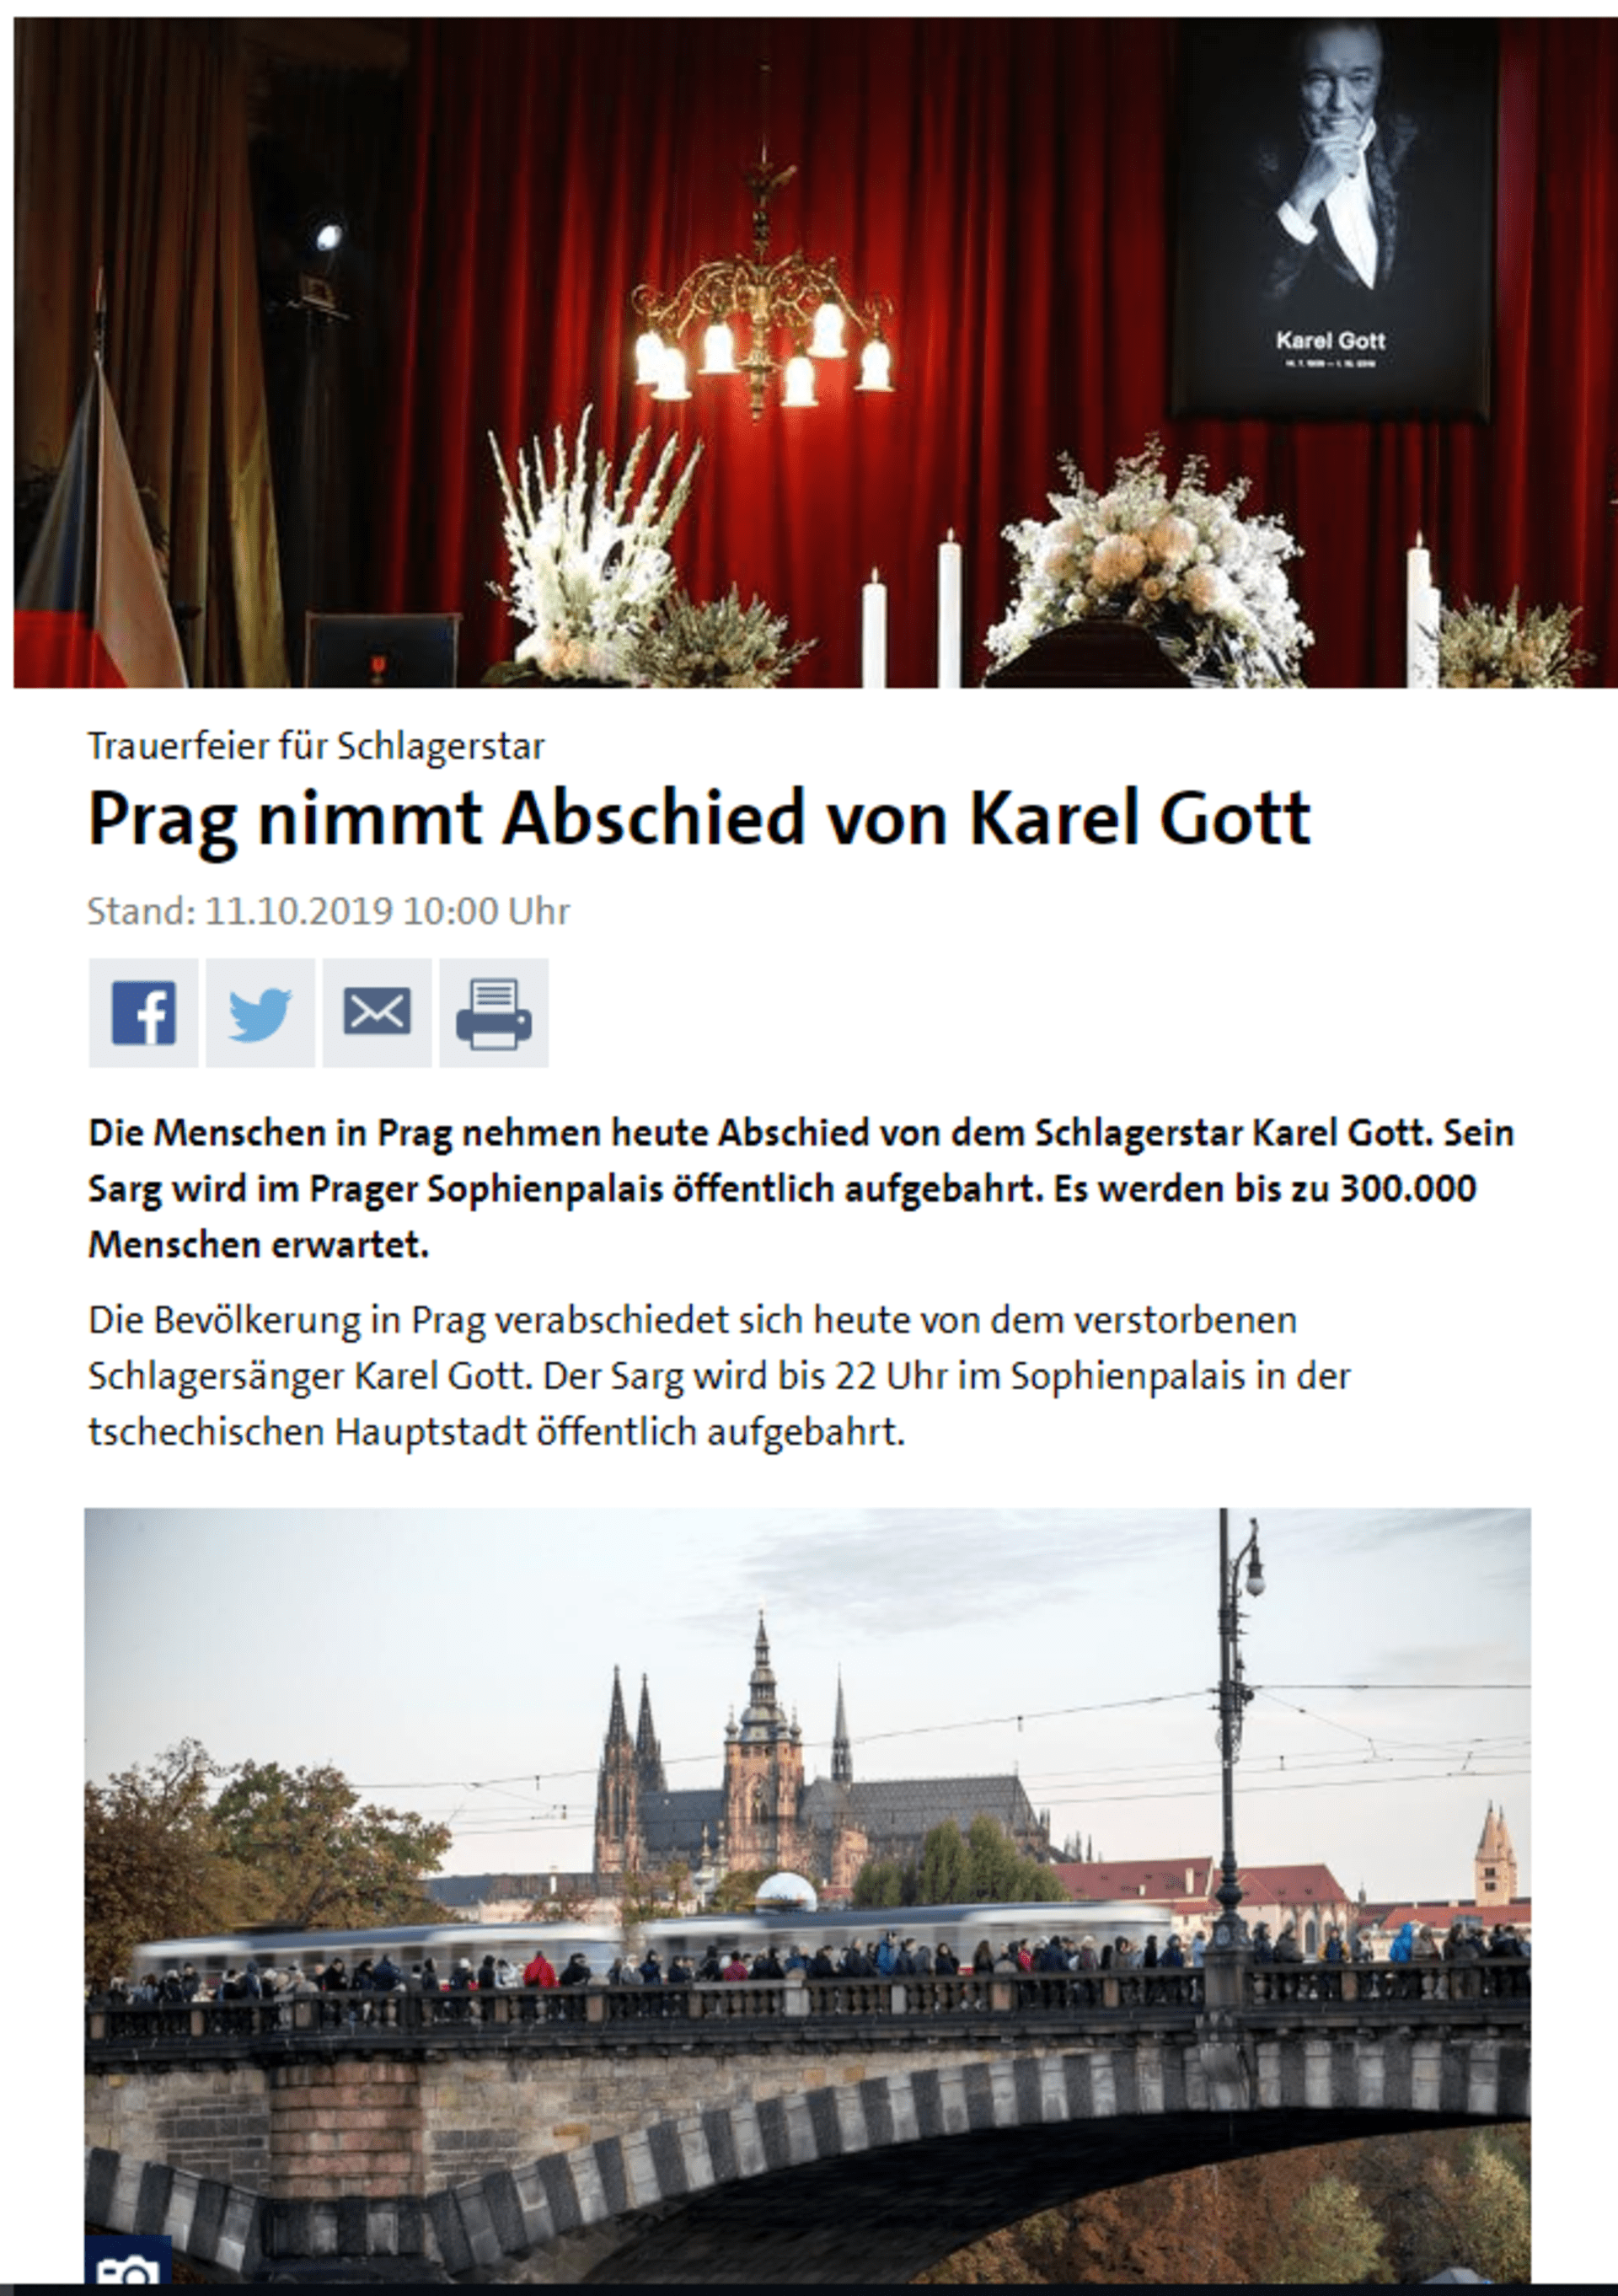 Článek na německém zpravodajském serveru Tagesschau, který spadá pod skupinu ARD